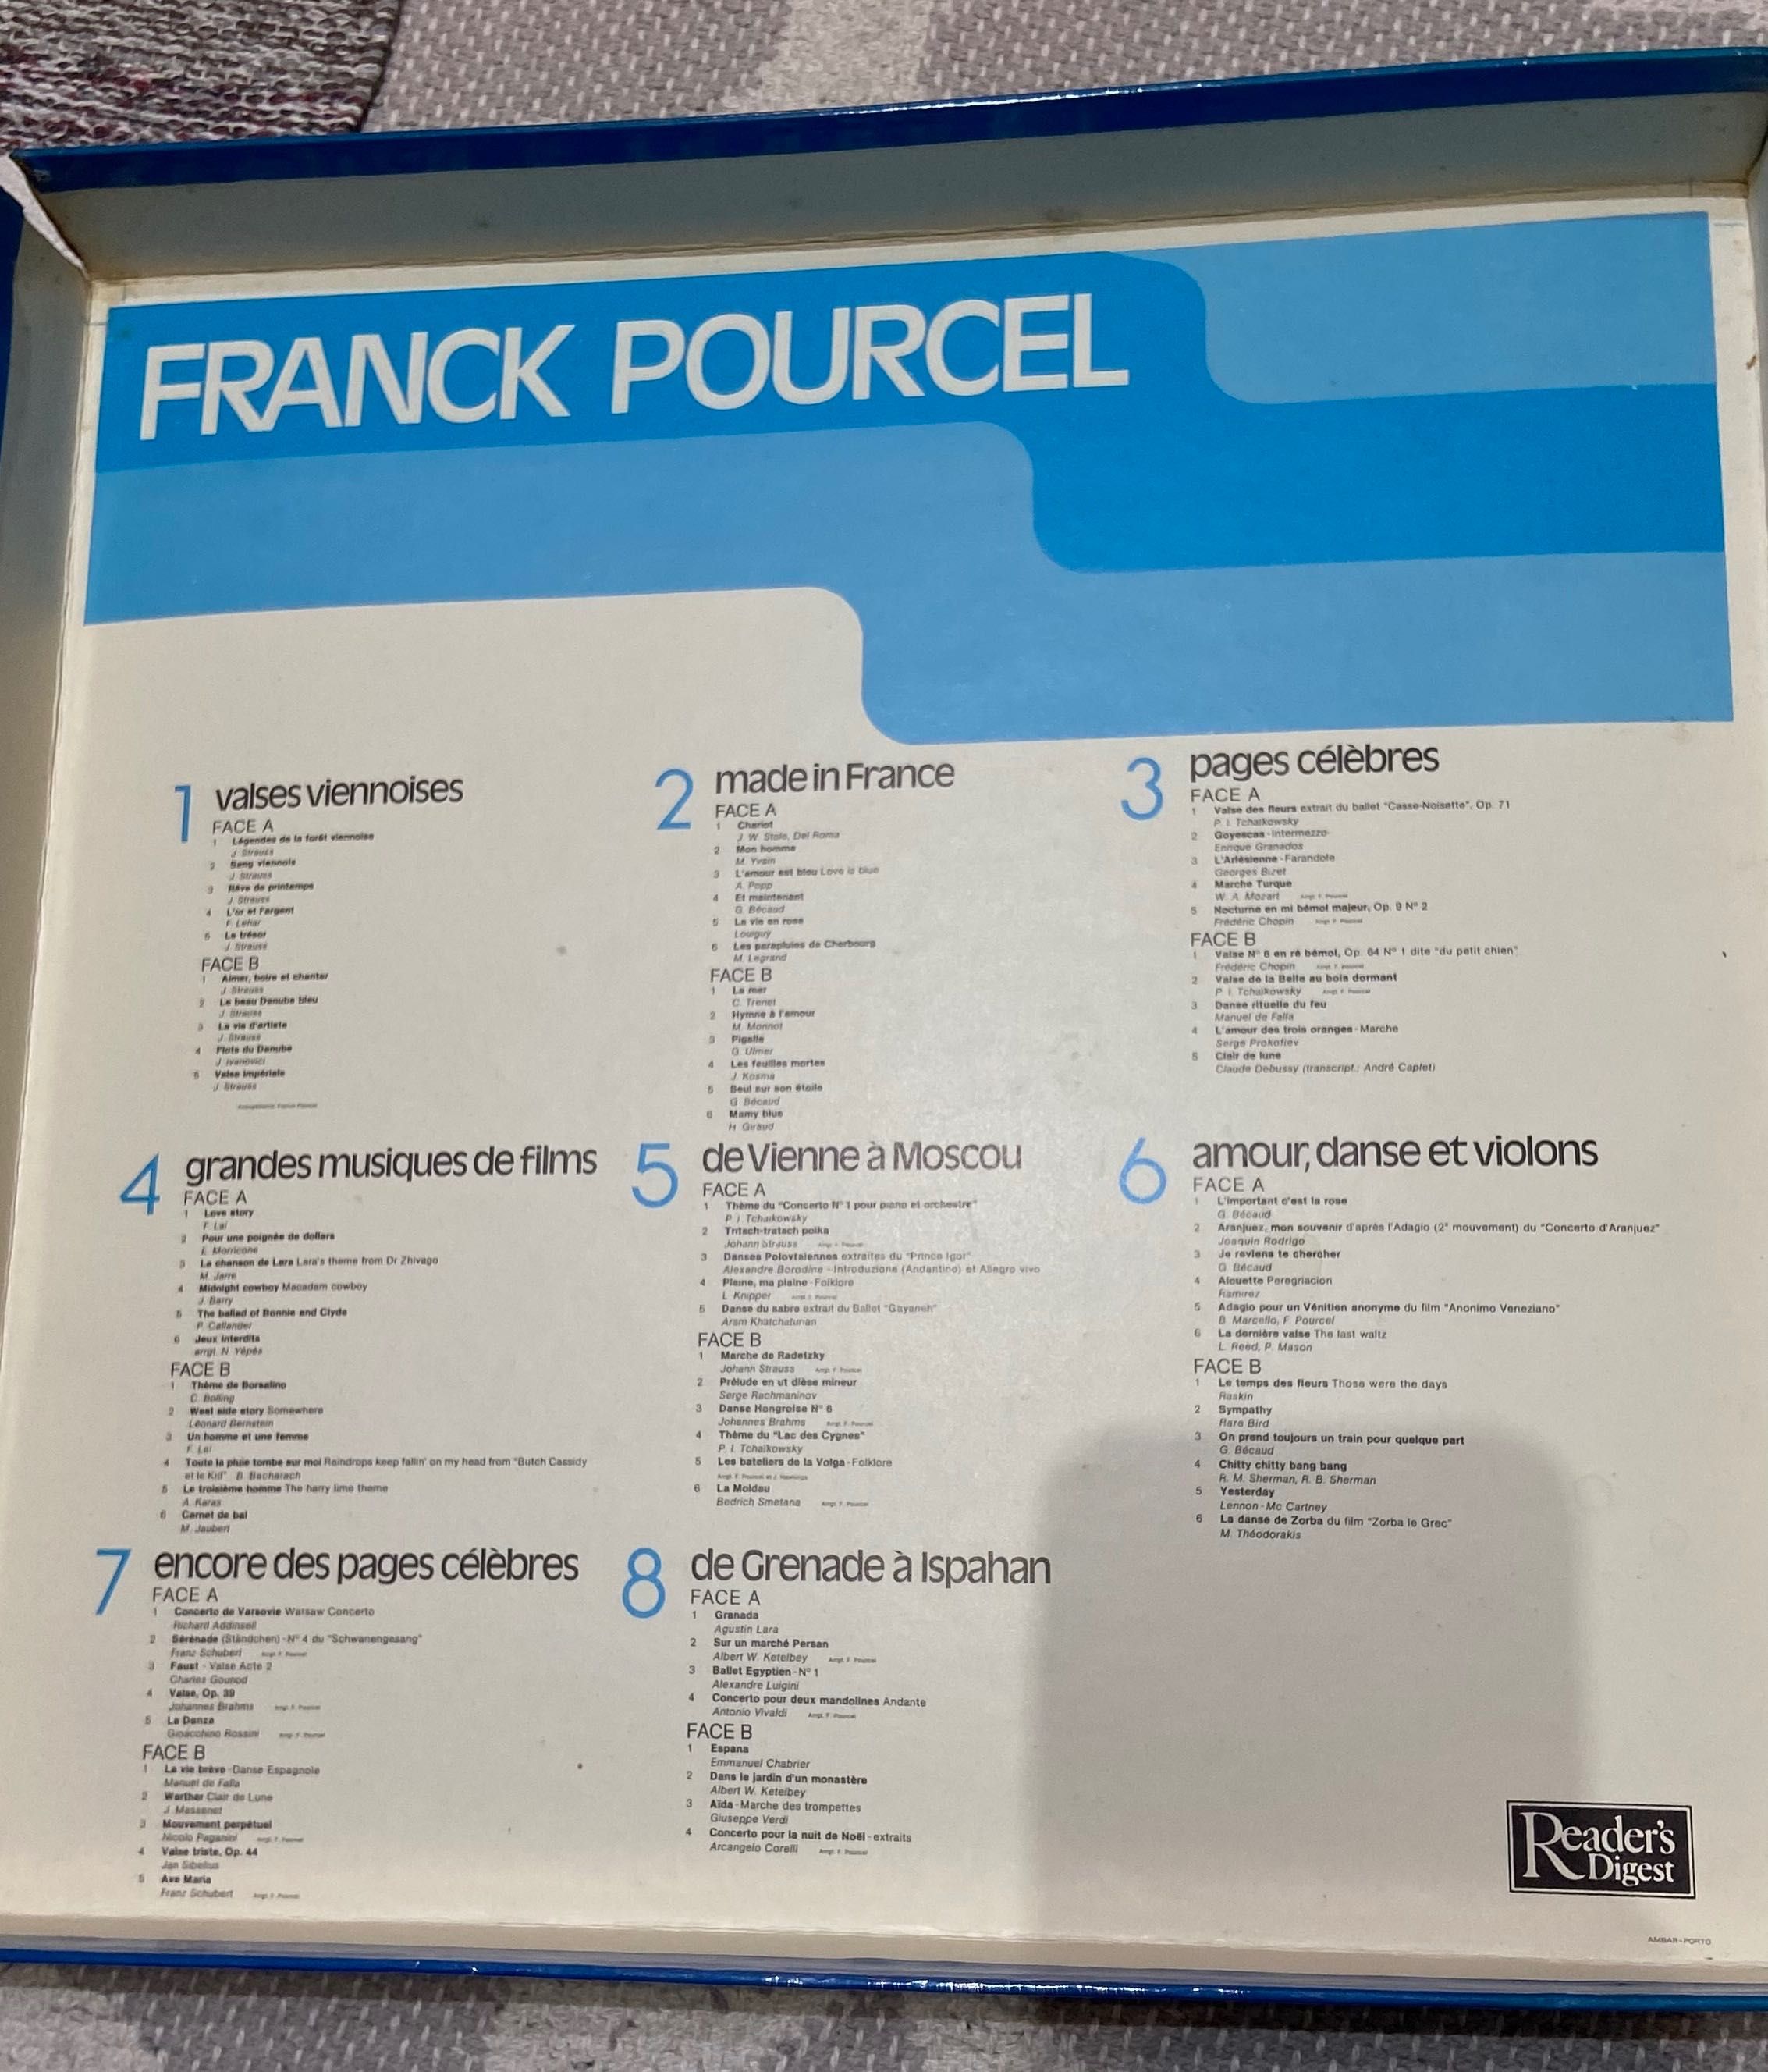 Coleção de discos em vinil “Pleins Feux Sur Franck Pourcel”